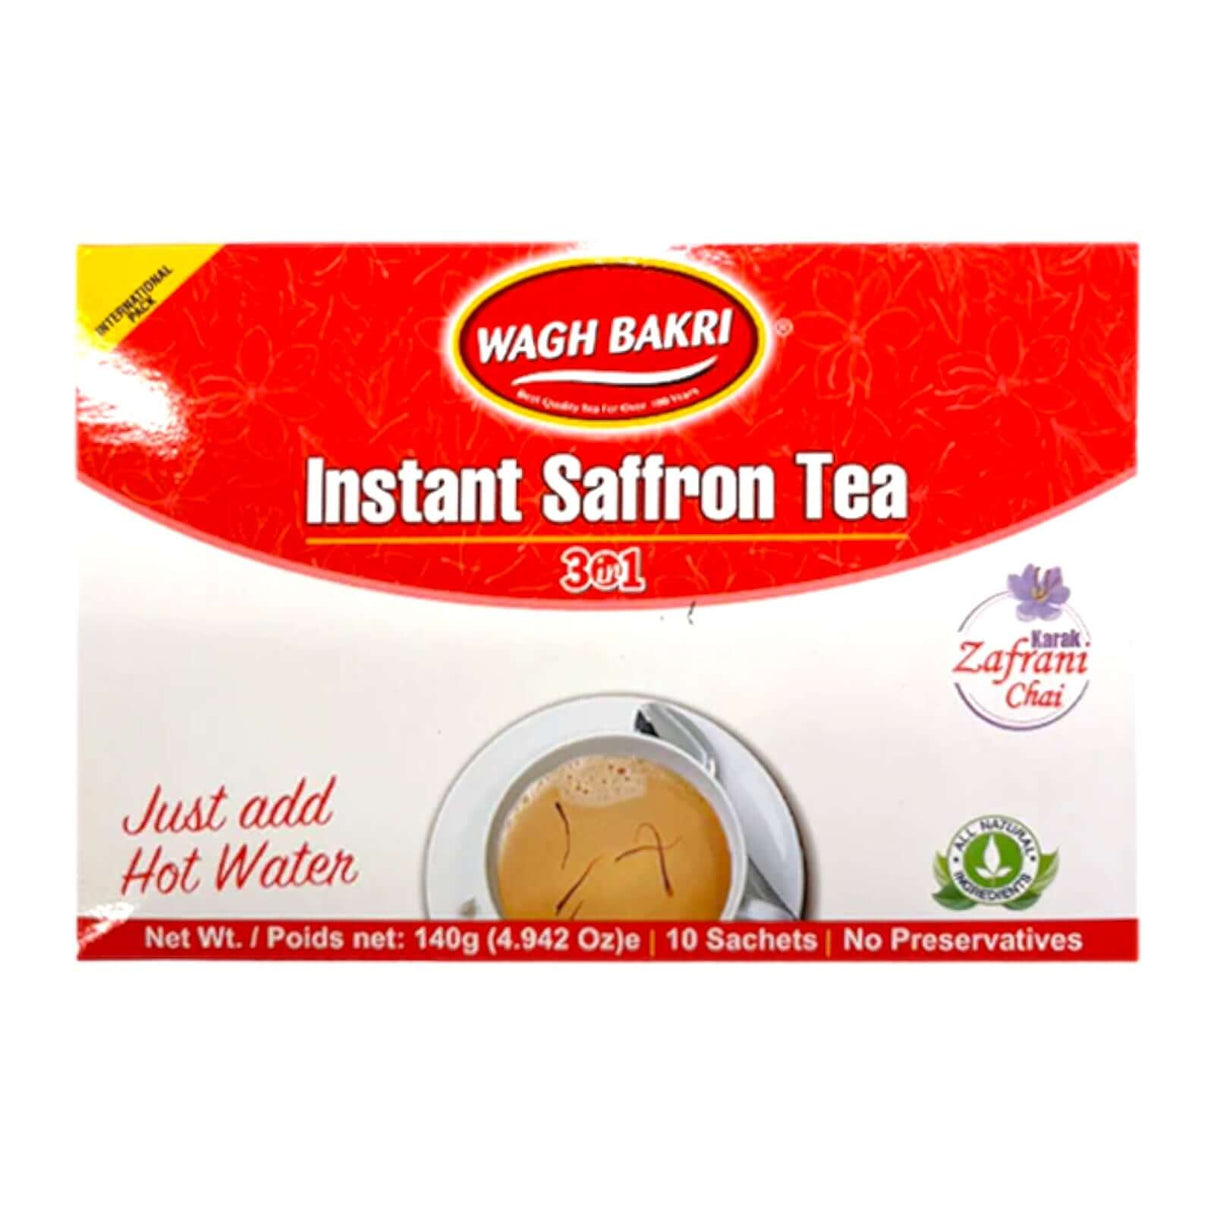 Wagh Bakri Instant Saffron Tea 3 in 1